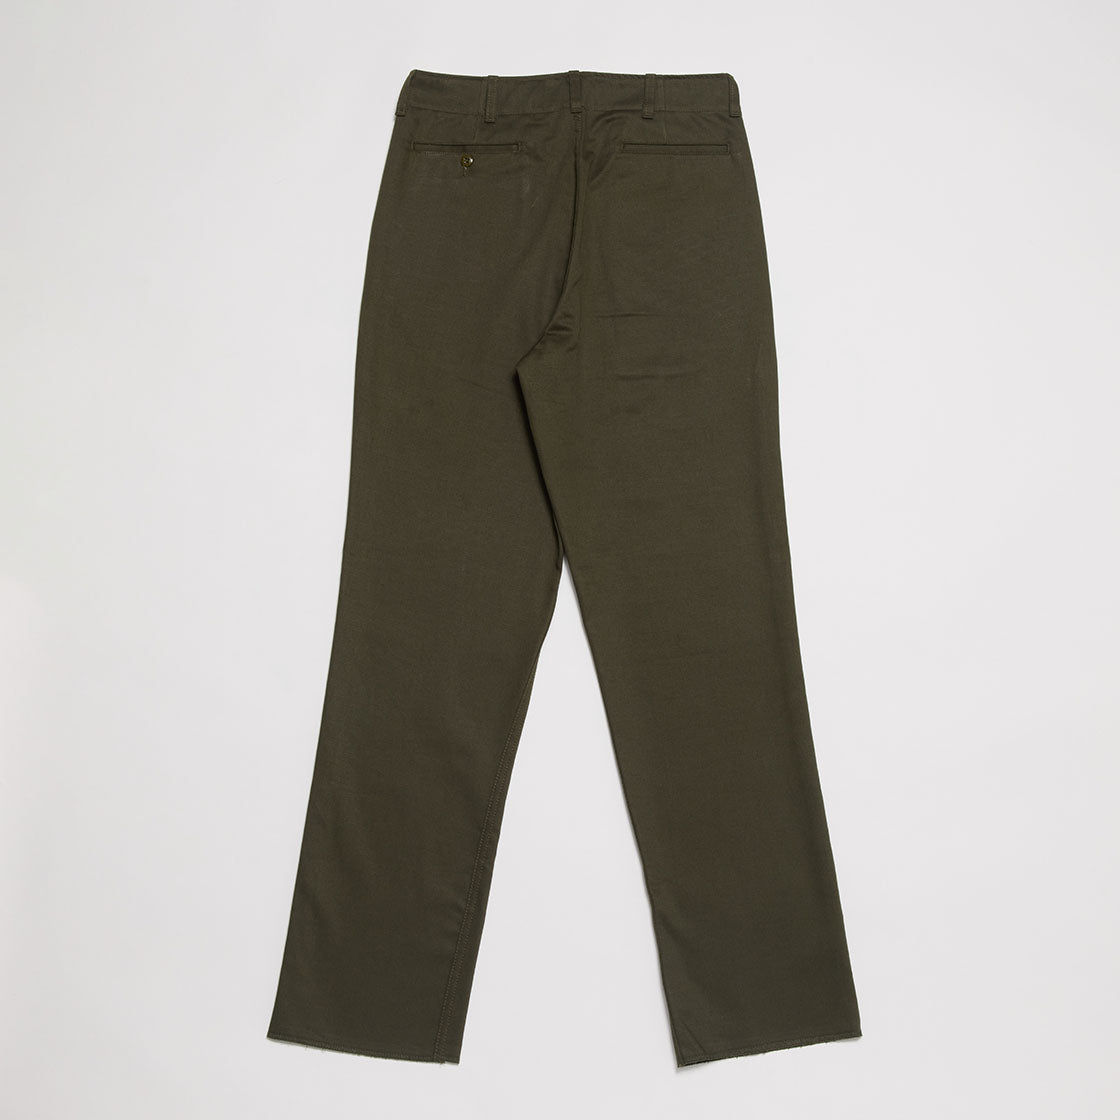 Boy Scout Pants (OD Green)